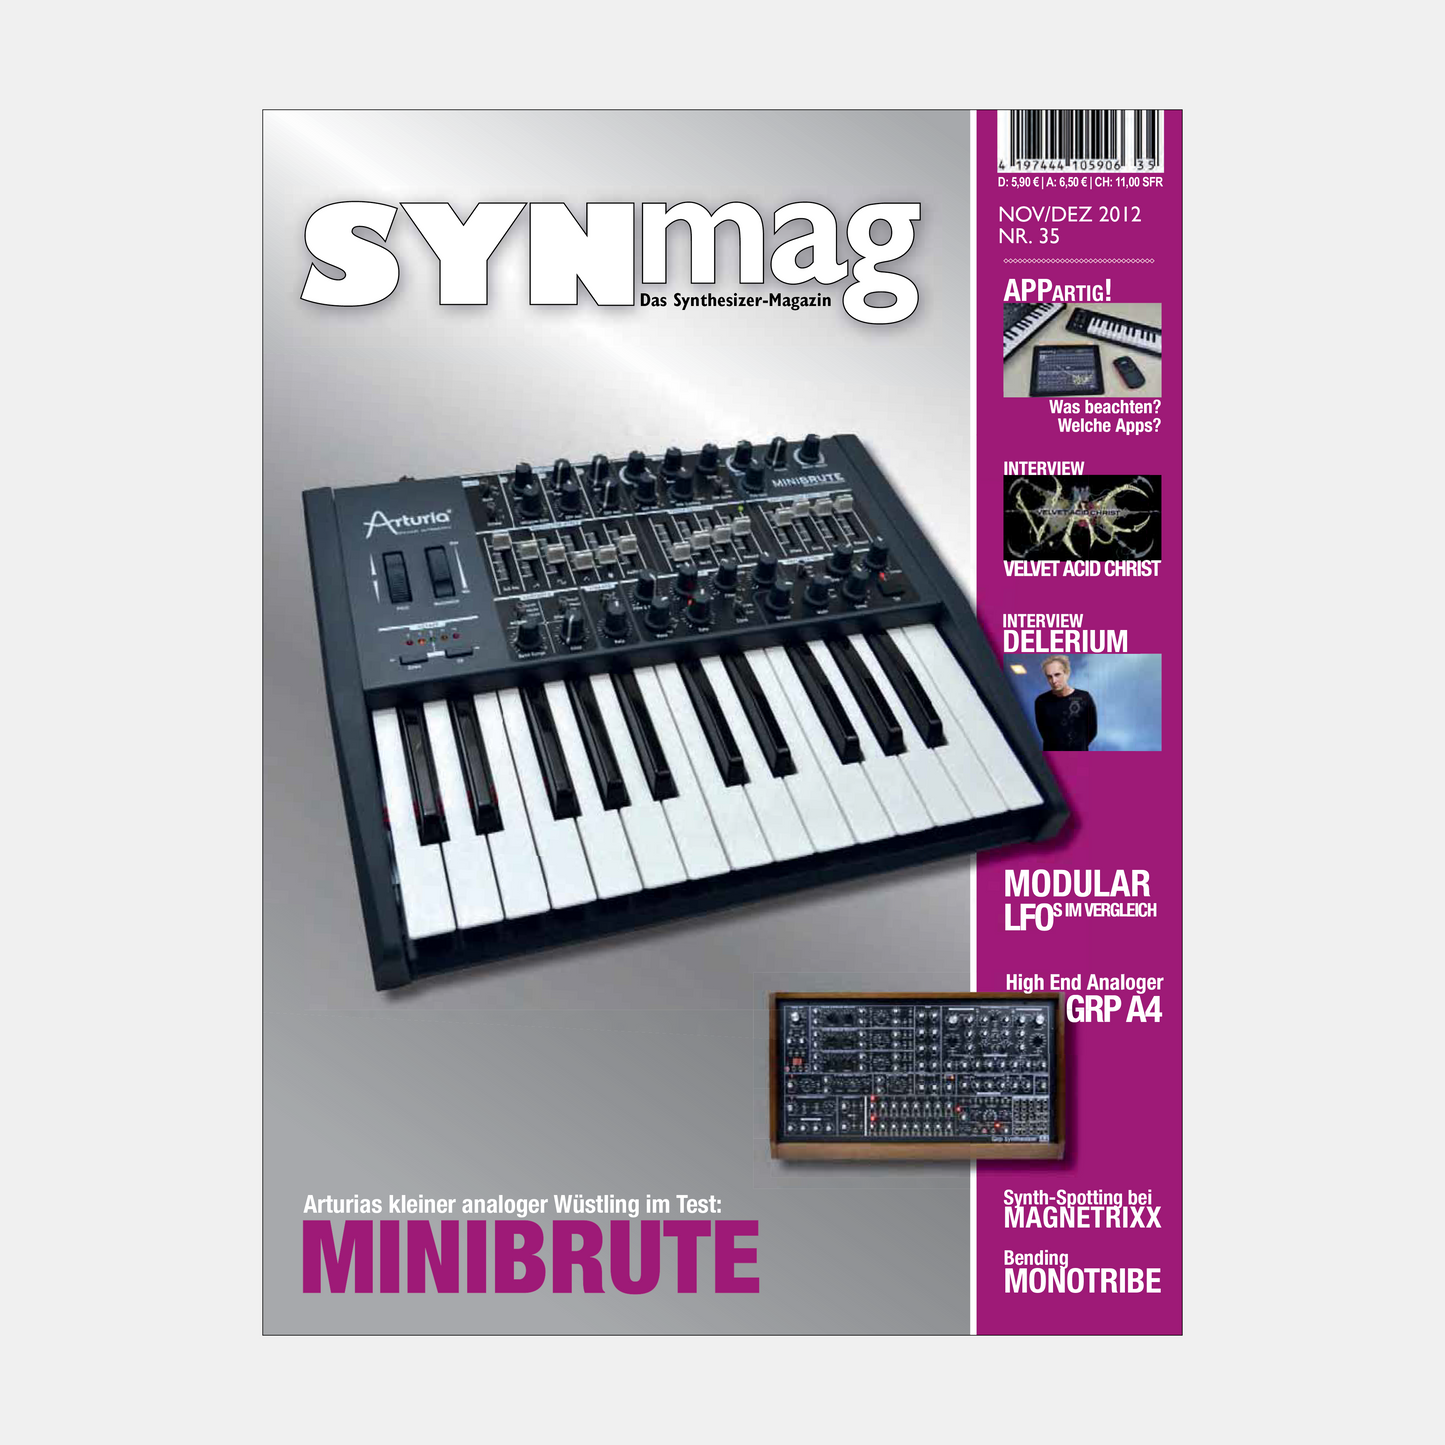 Synmag | Ausgaben 31 bis 35 im Paket | ePaper